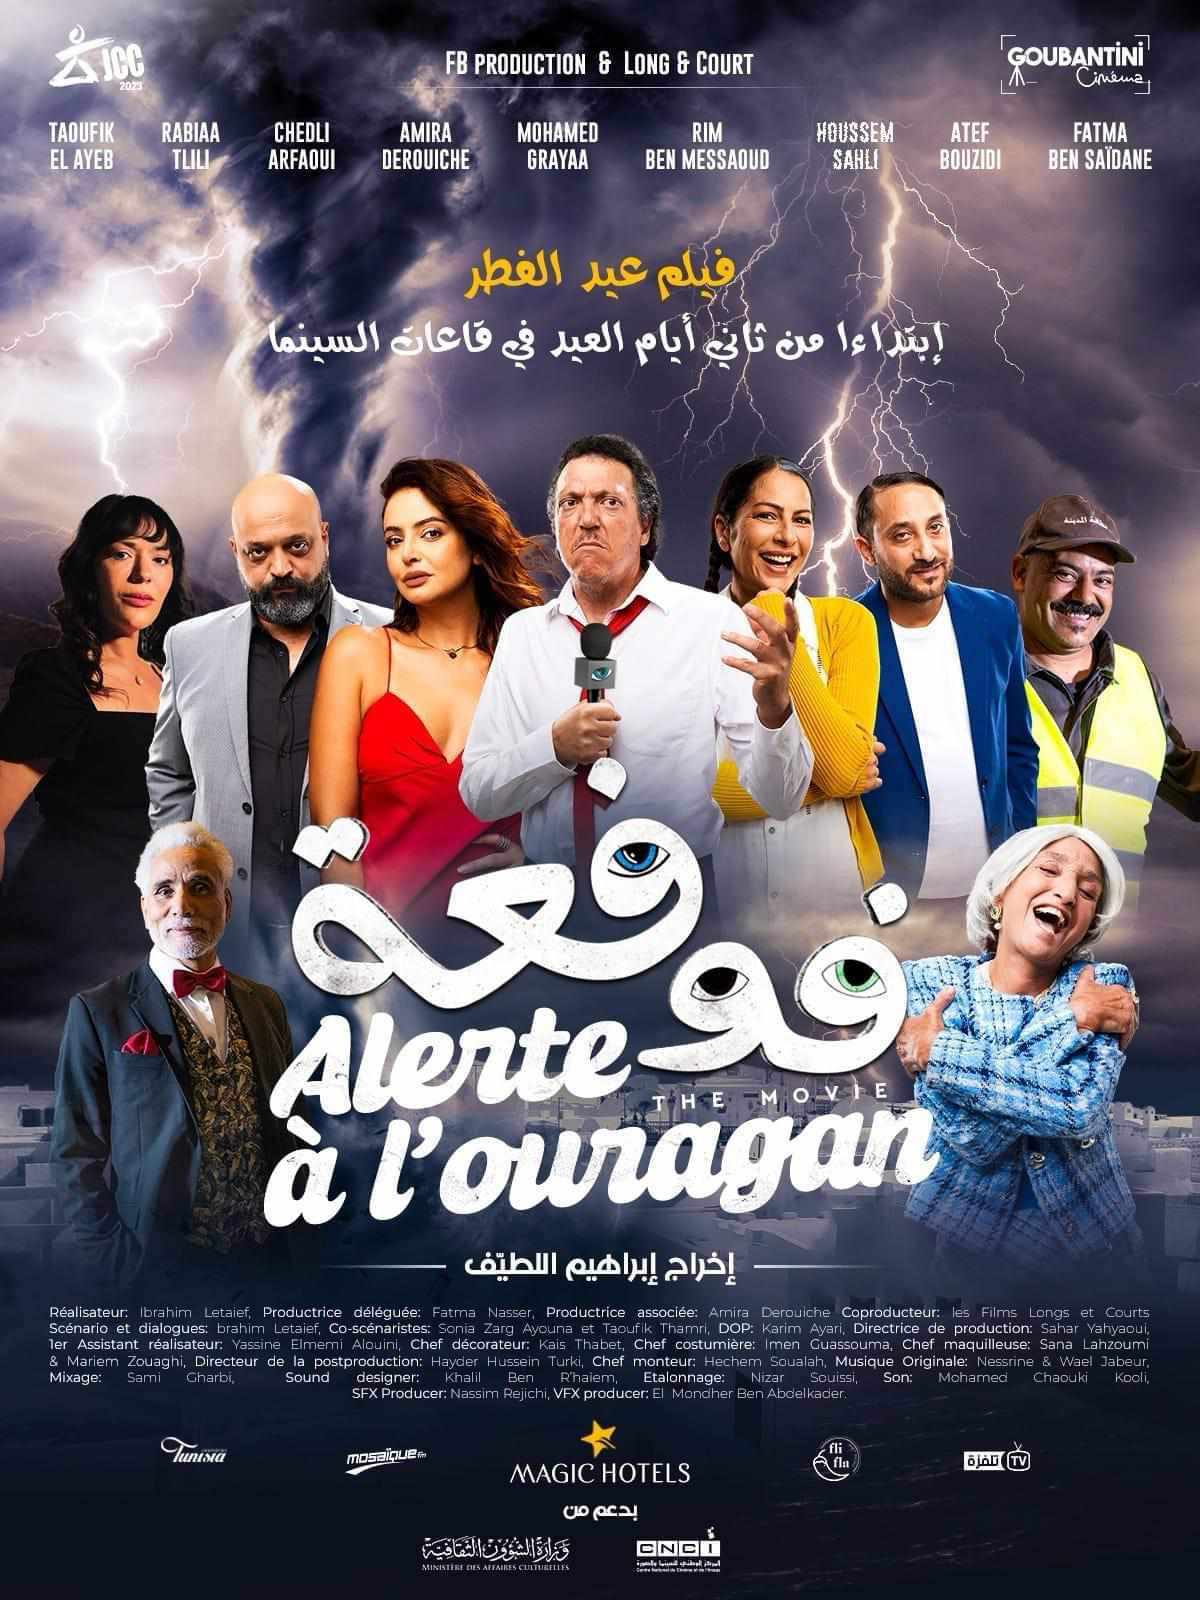 بداية من 12 افريل..فيلم العيد "فوفعة" لابراهيم اللطيف في قاعات السينما التونسية 